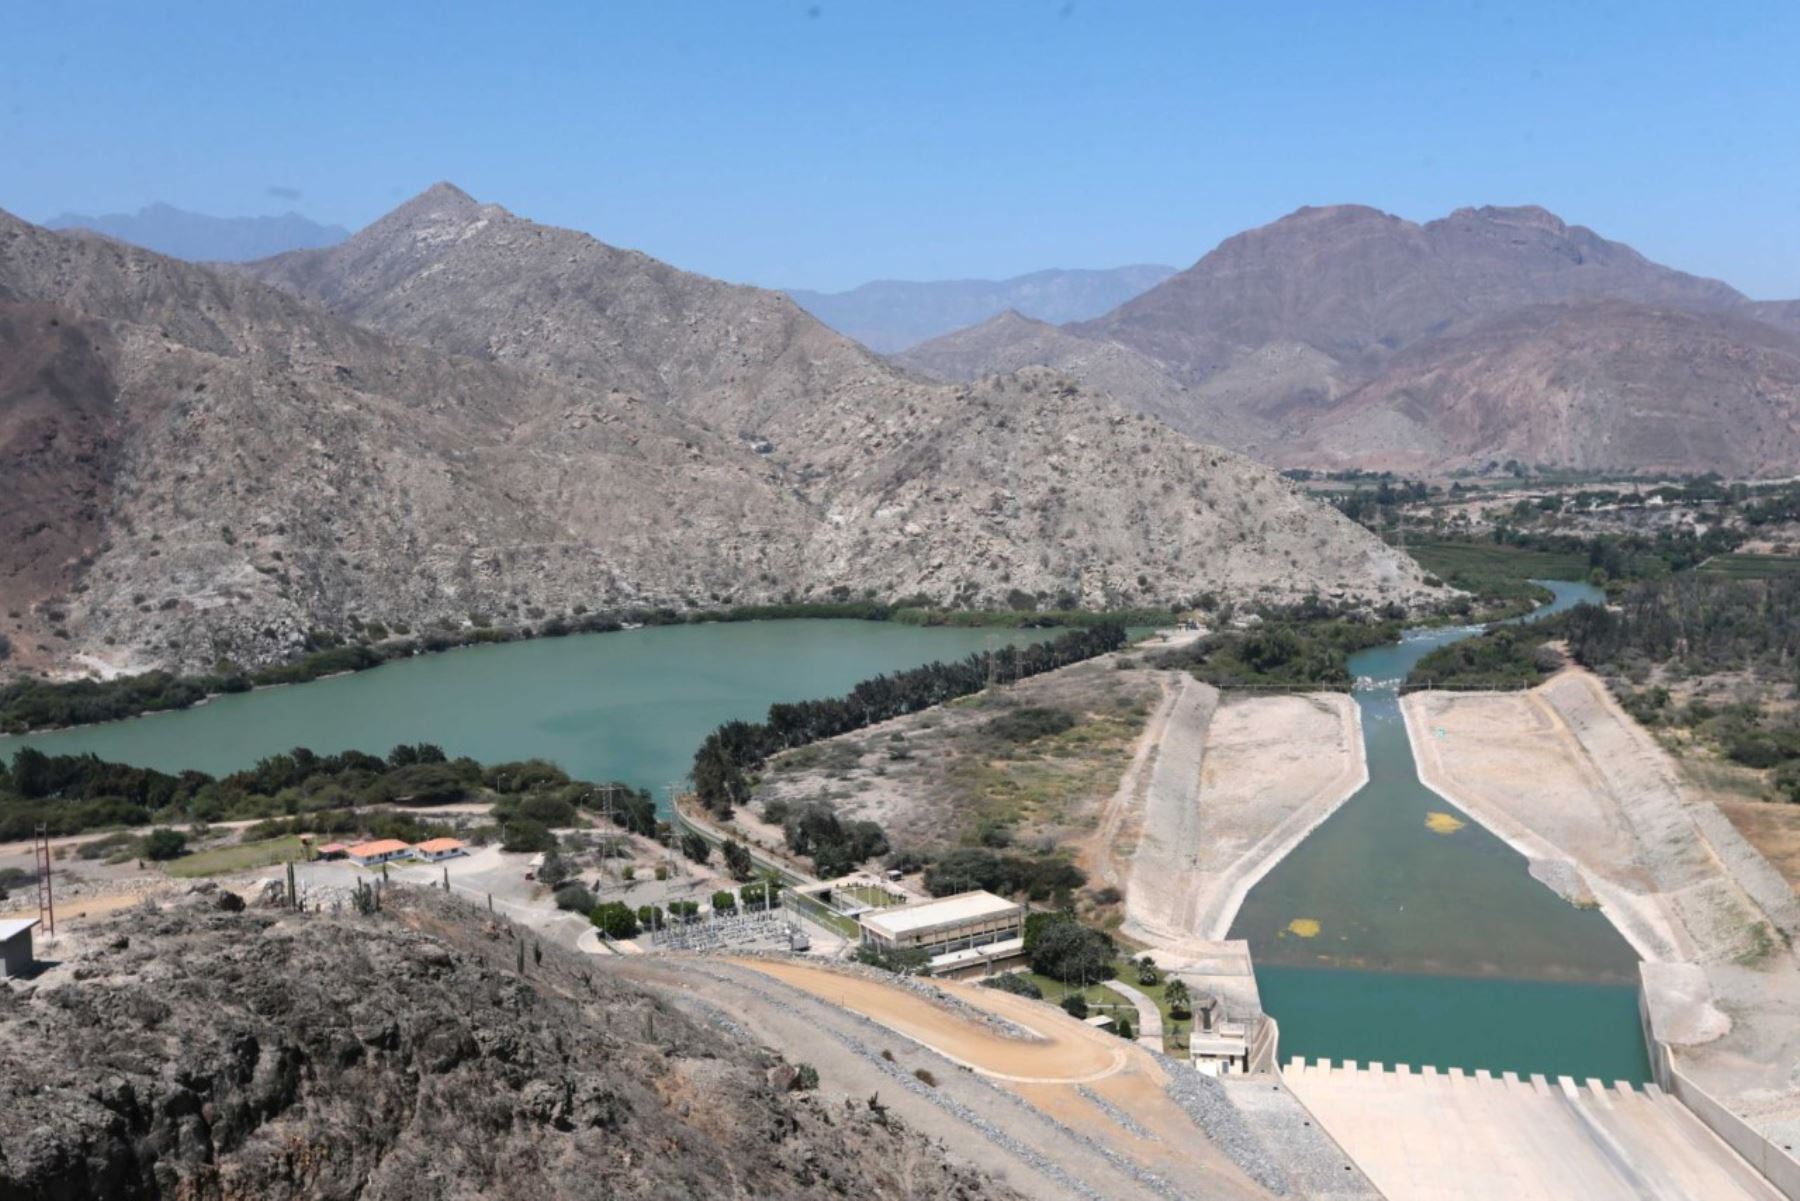 Ministerio de Agricultura asegura que no se privatizará la represa Gallito Ciego ni se afectará abastecimiento de agua.